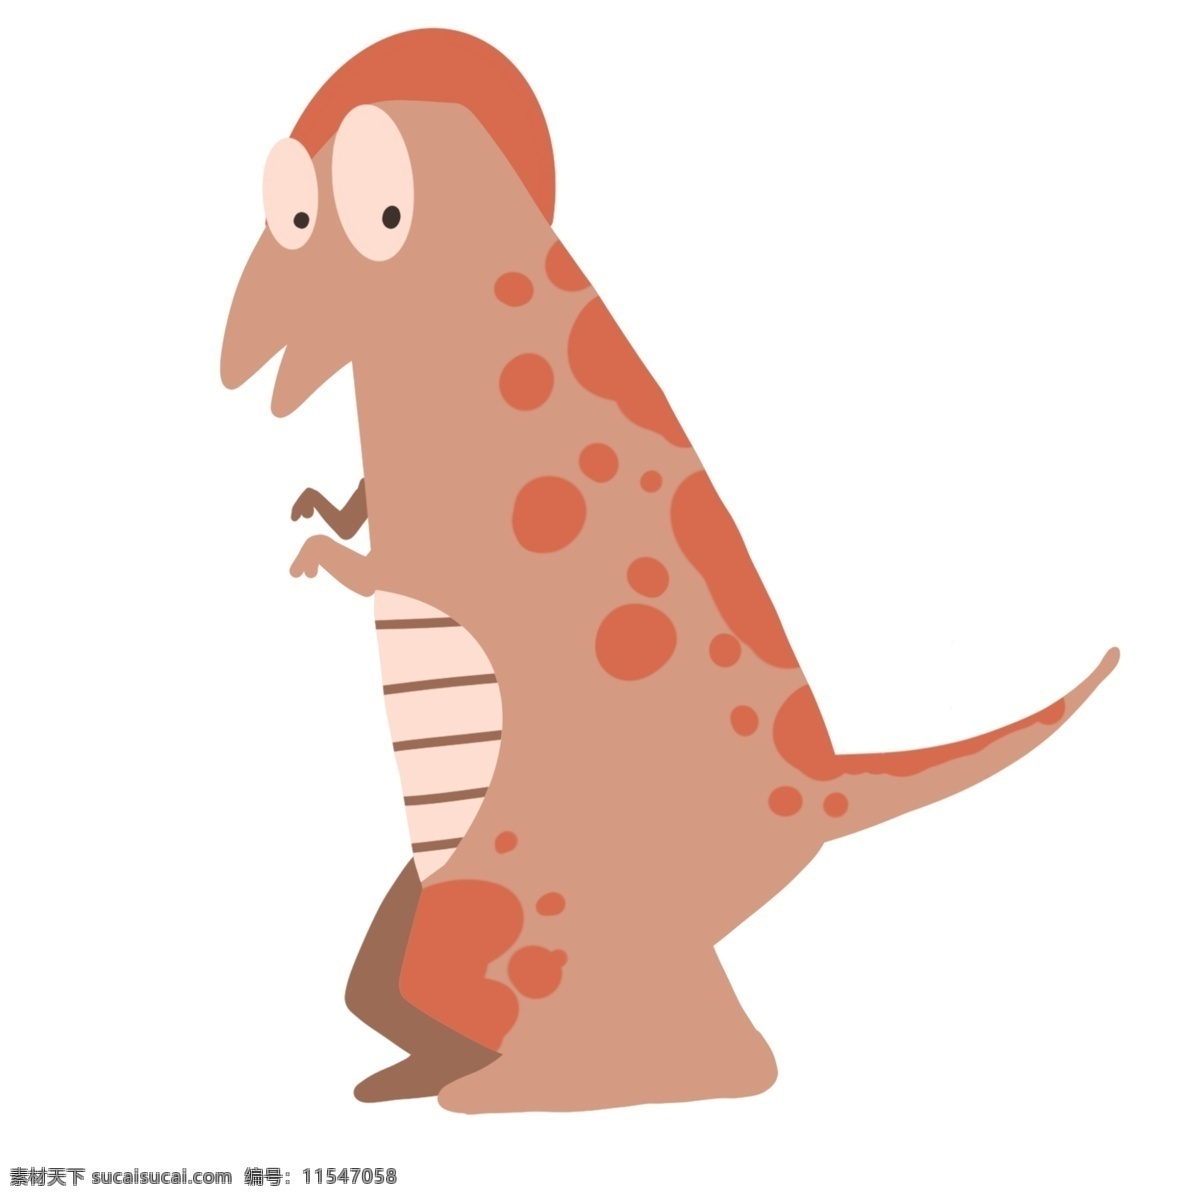 站立 行走 气 龙 插图 气龙 恐龙 恐龙插图 直立行走 卡通恐龙 动物